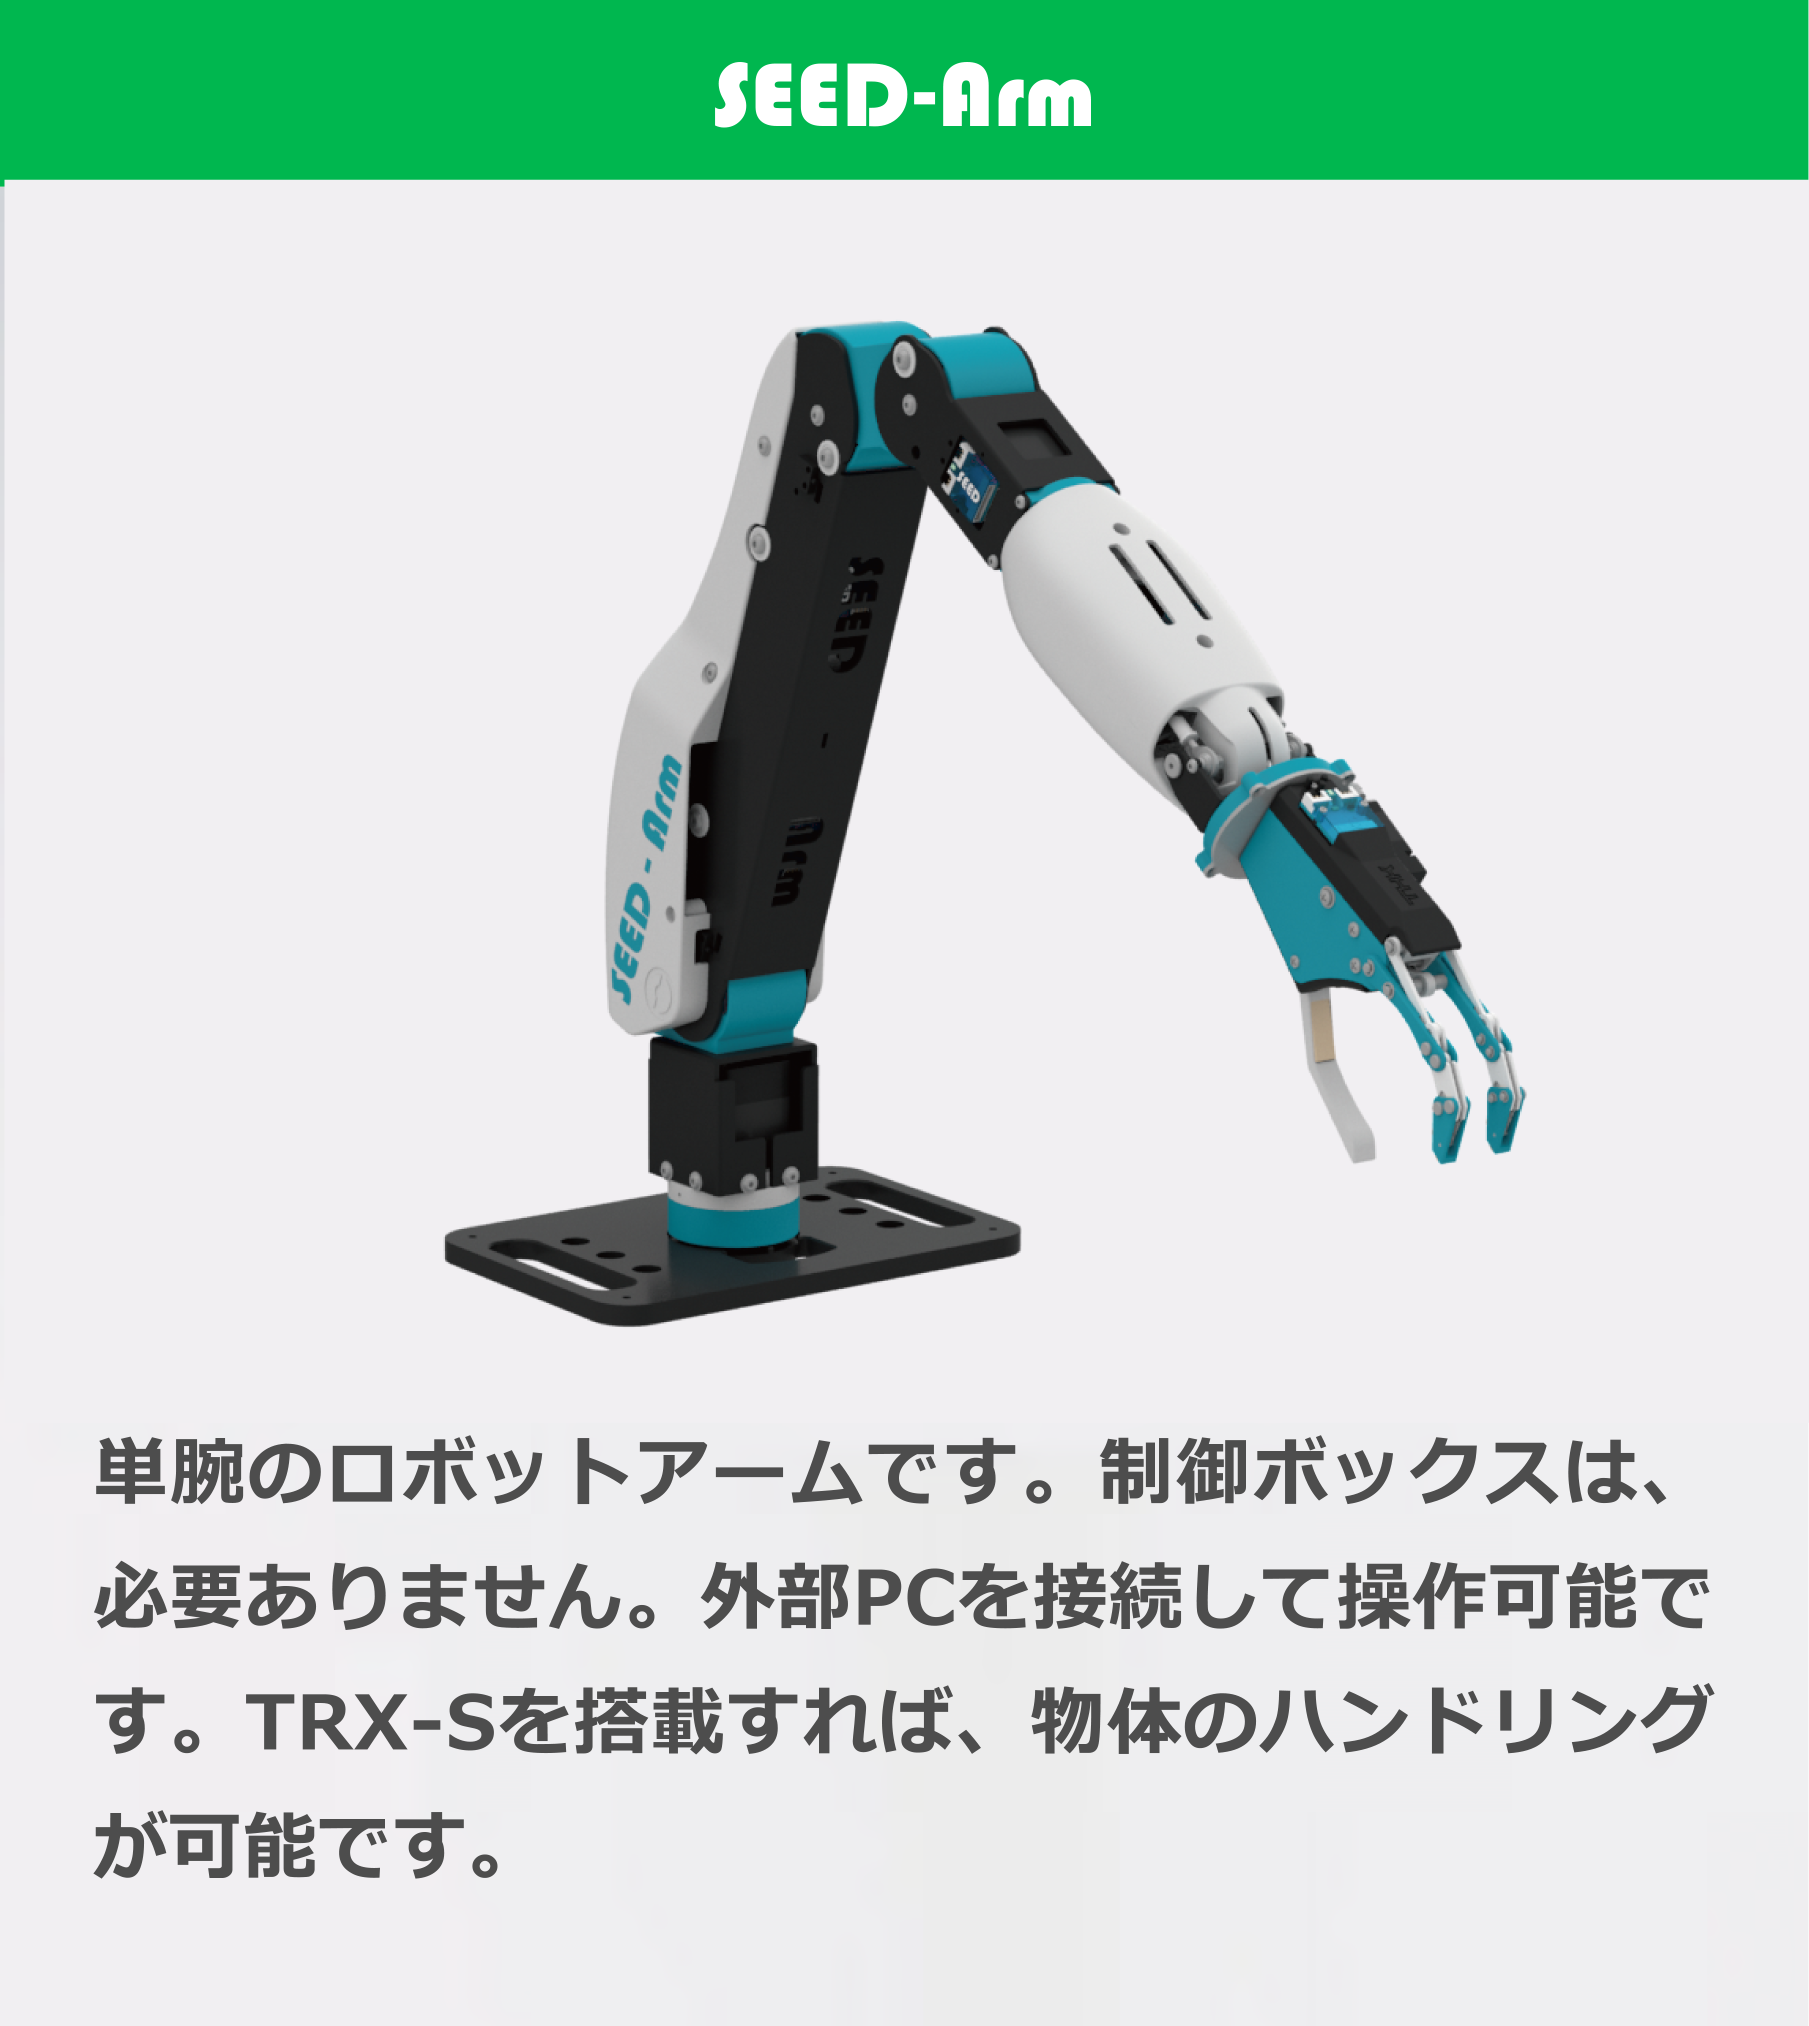 SEED-Arm 単腕のロボットアームです。制御ボックスは、必要ありません。外部PCを接続して操作可能です。TRX-Sを搭載すれば、物体のハンドリングが可能です。